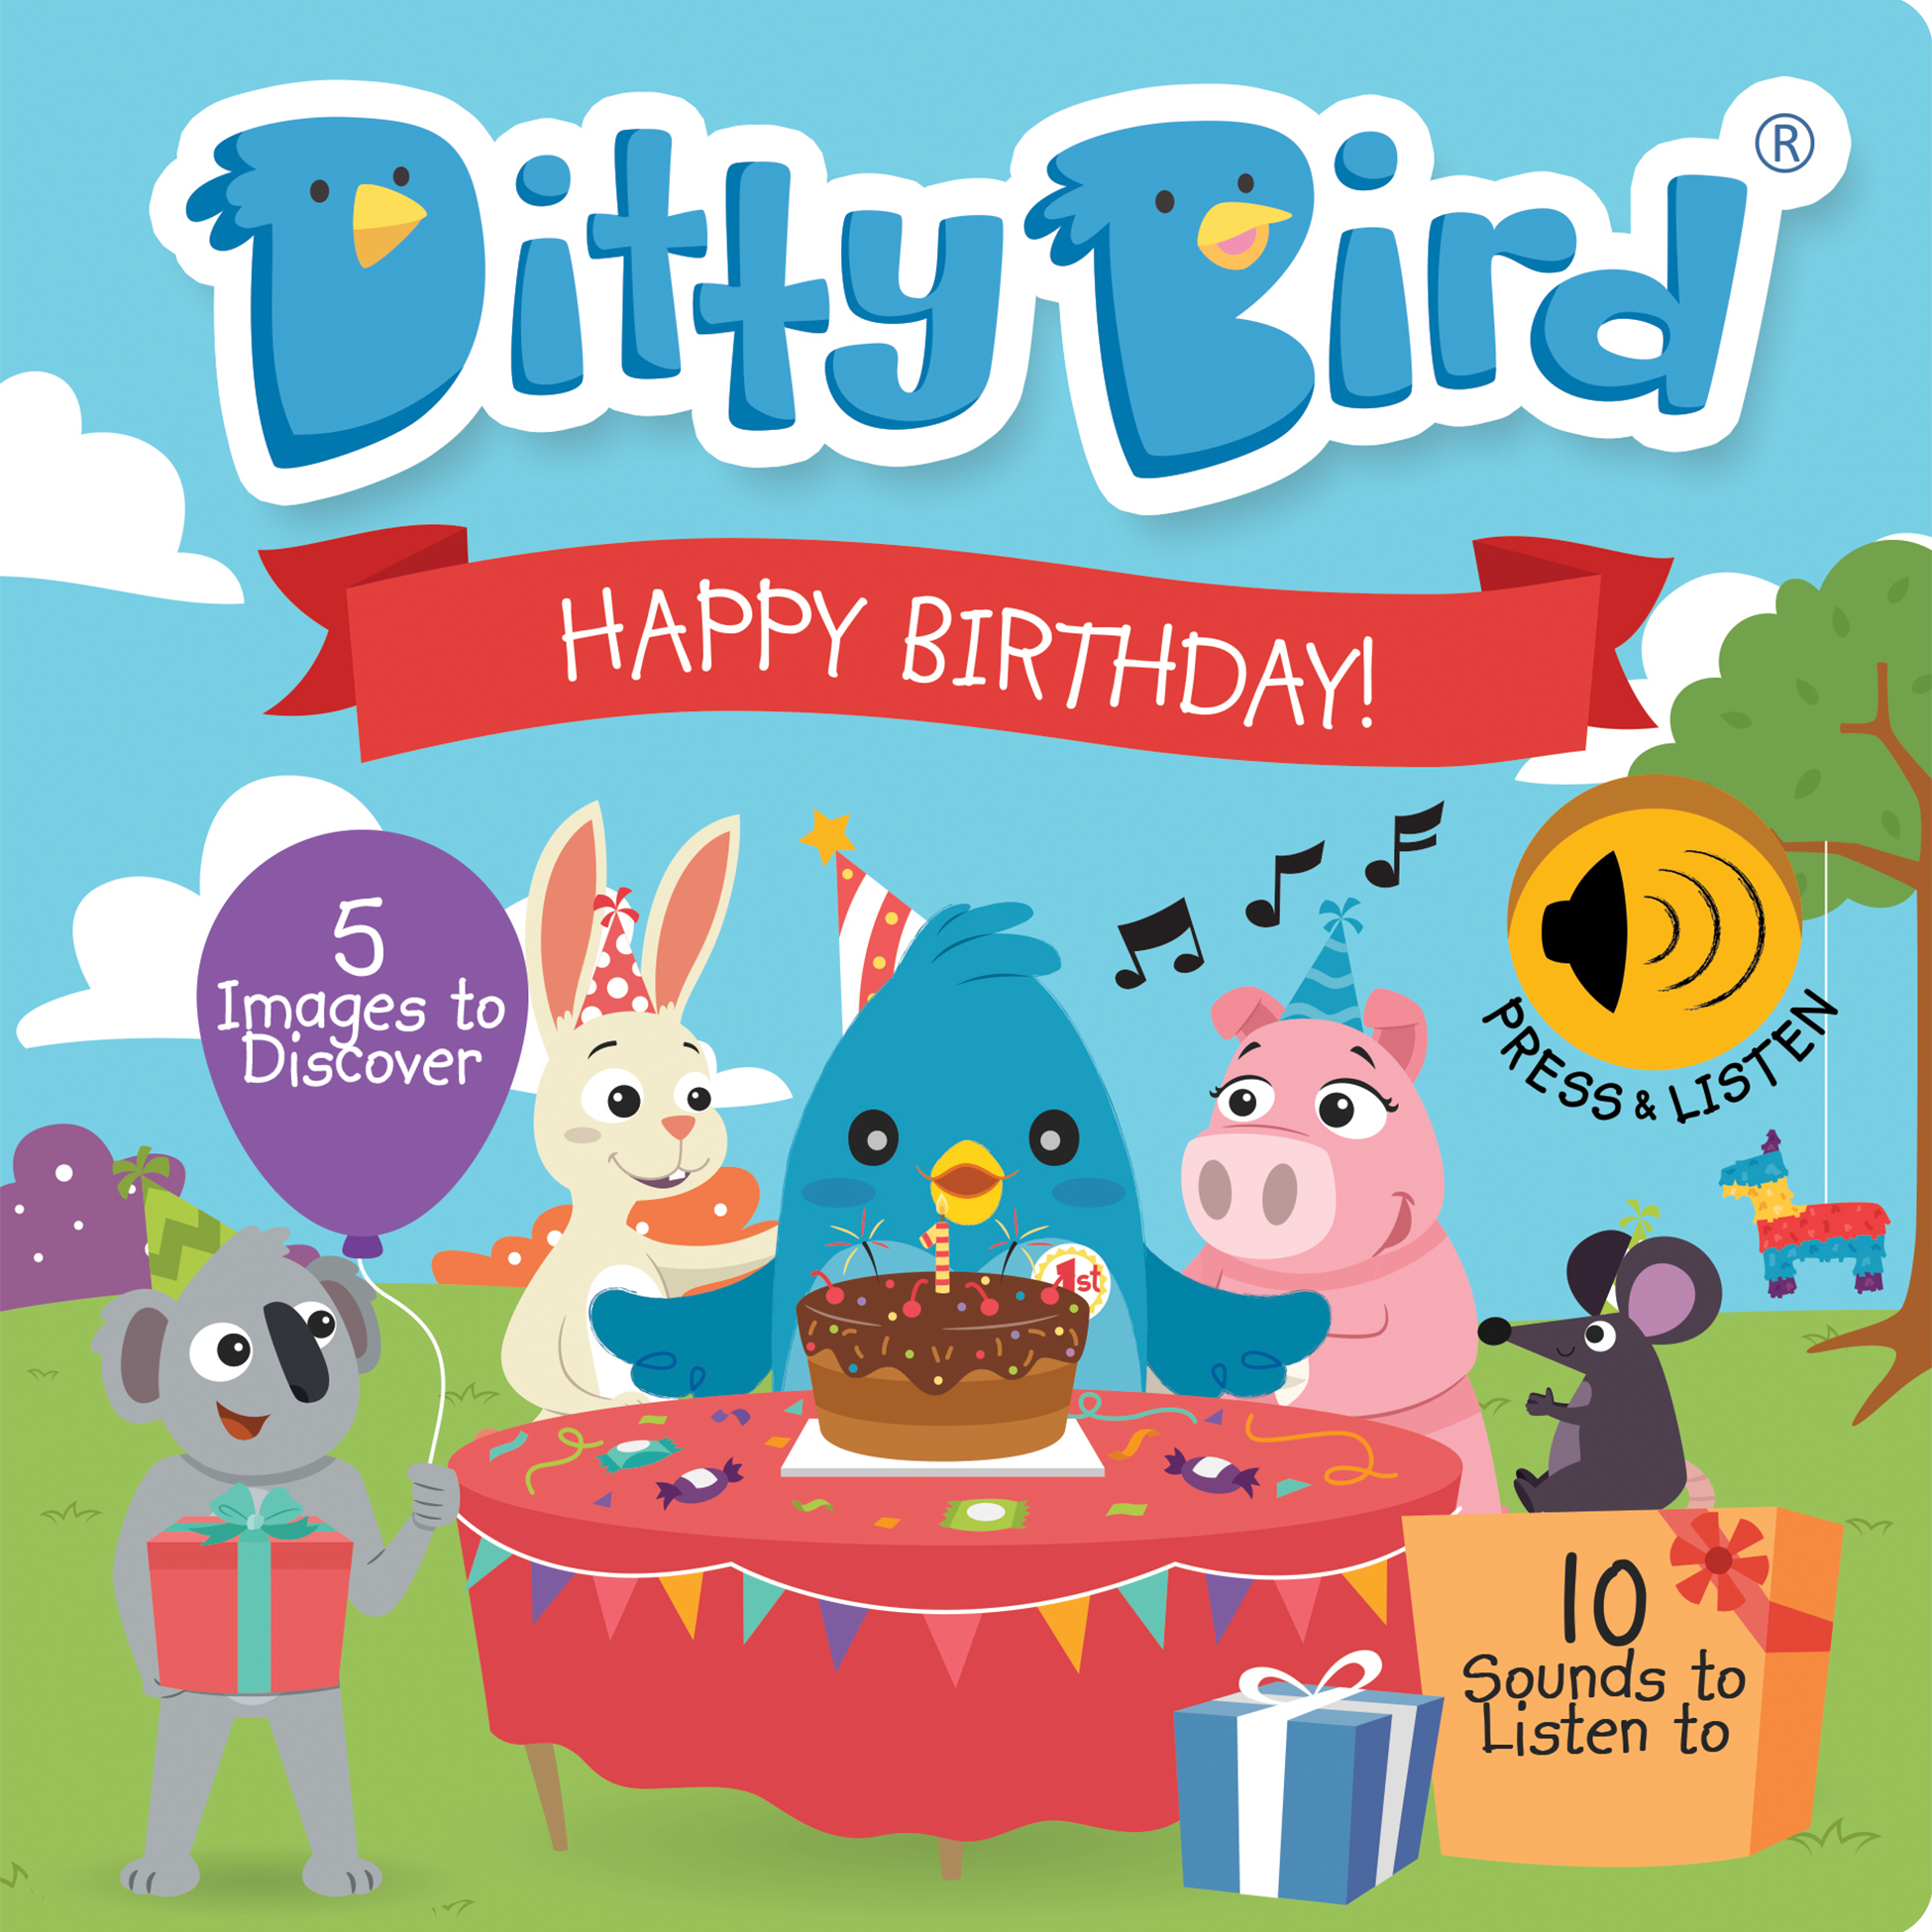 Ditty Bird - Happy Birthday - HoneyBug 